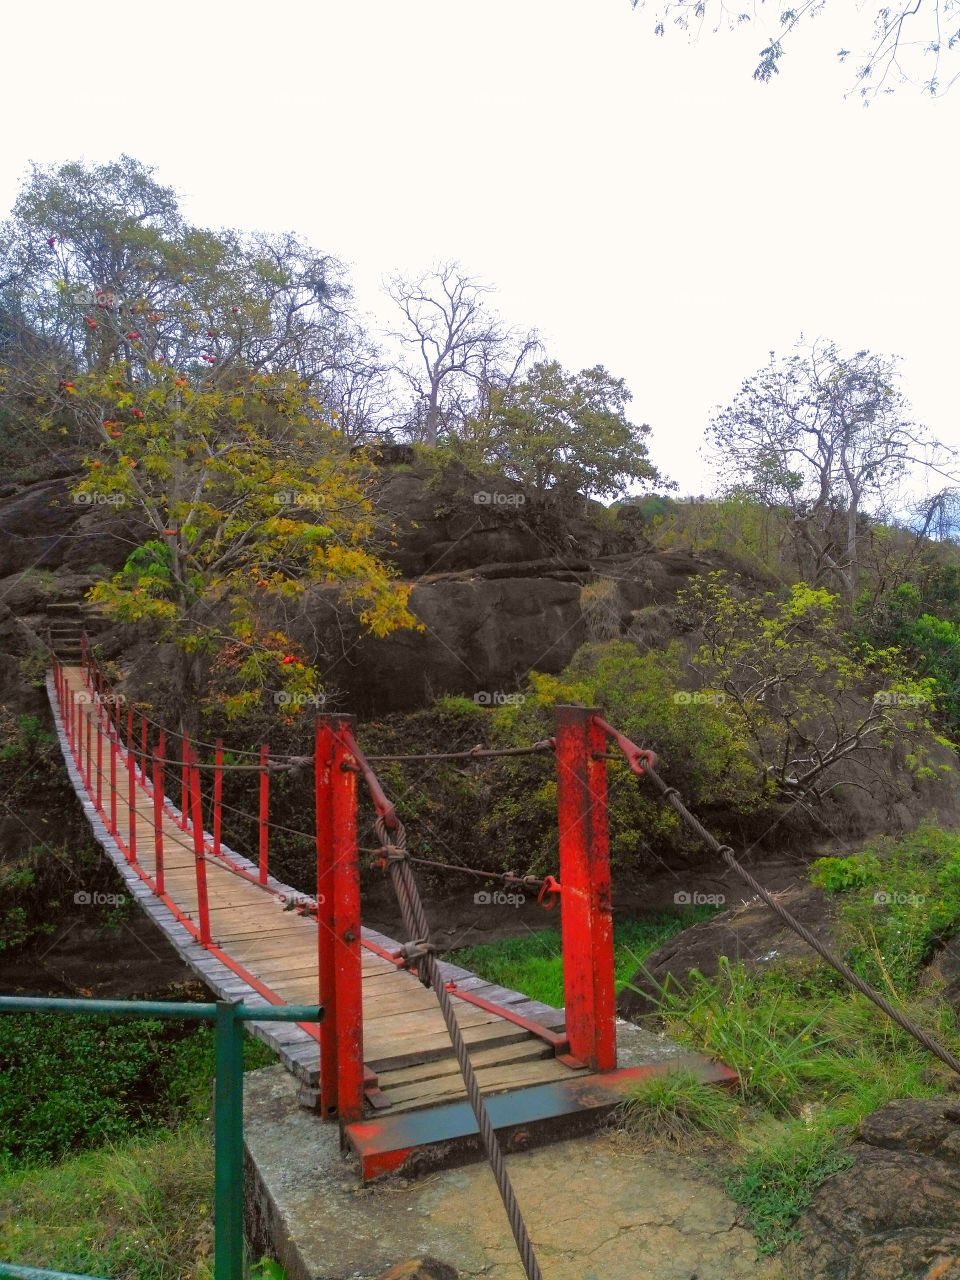 Sri Lanka mahiyanganaya sorabora lake bridge